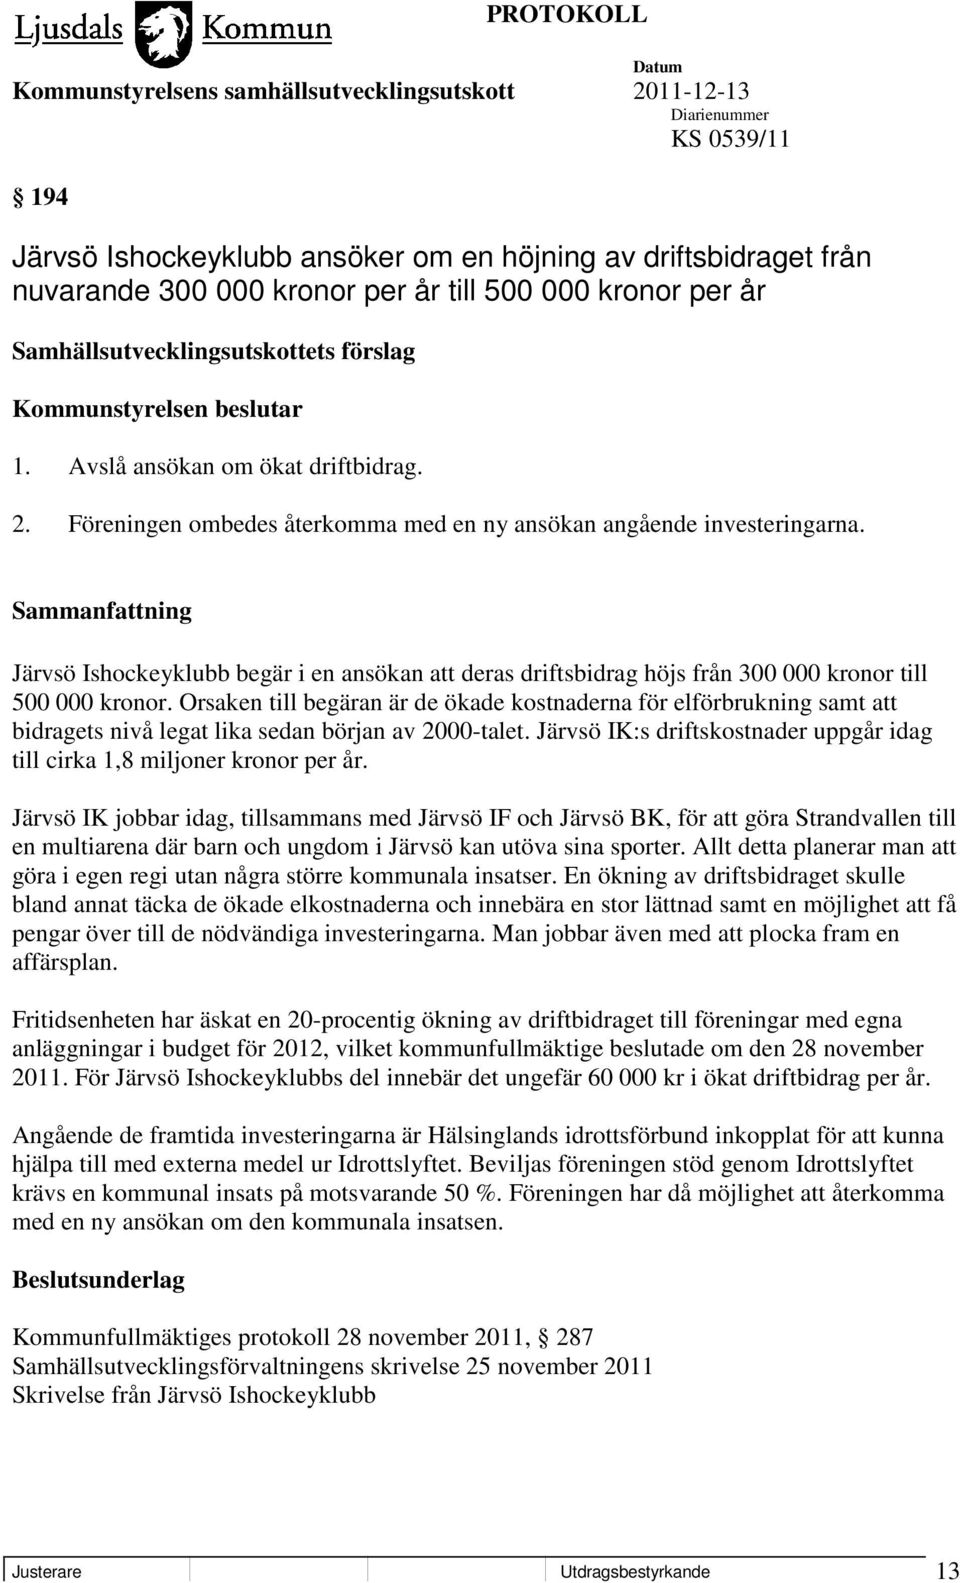 Järvsö Ishockeyklubb begär i en ansökan att deras driftsbidrag höjs från 300 000 kronor till 500 000 kronor.